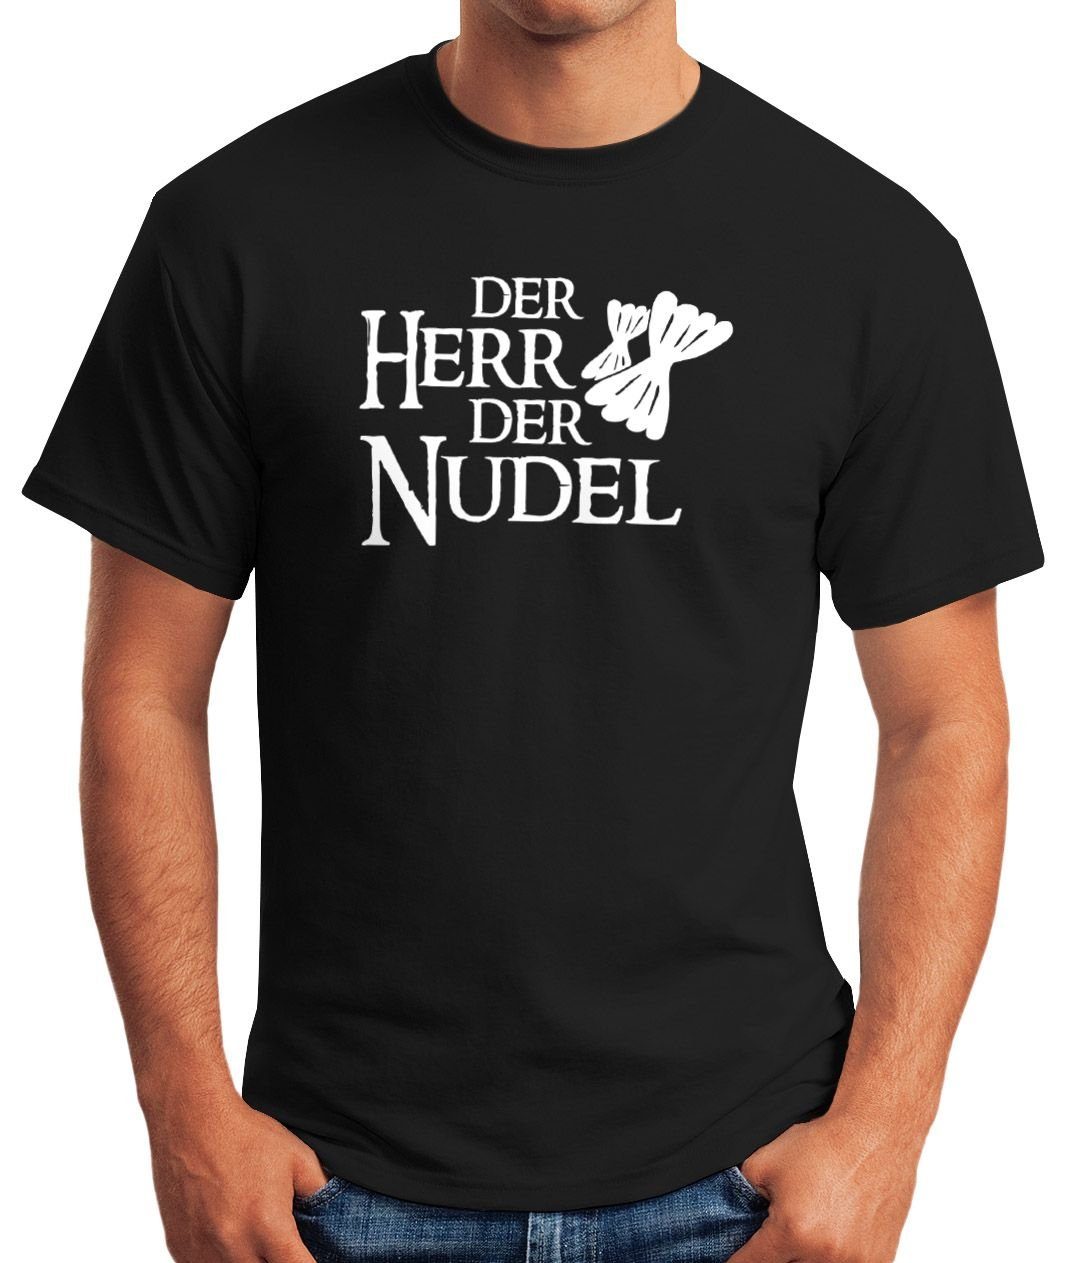 Der Parodie Film der Pasta Herr Print Herren bunkern Moonworks® Nudel mit MoonWorks kaufen hamstern Print-Shirt Hamsterkäufe T-Shirt